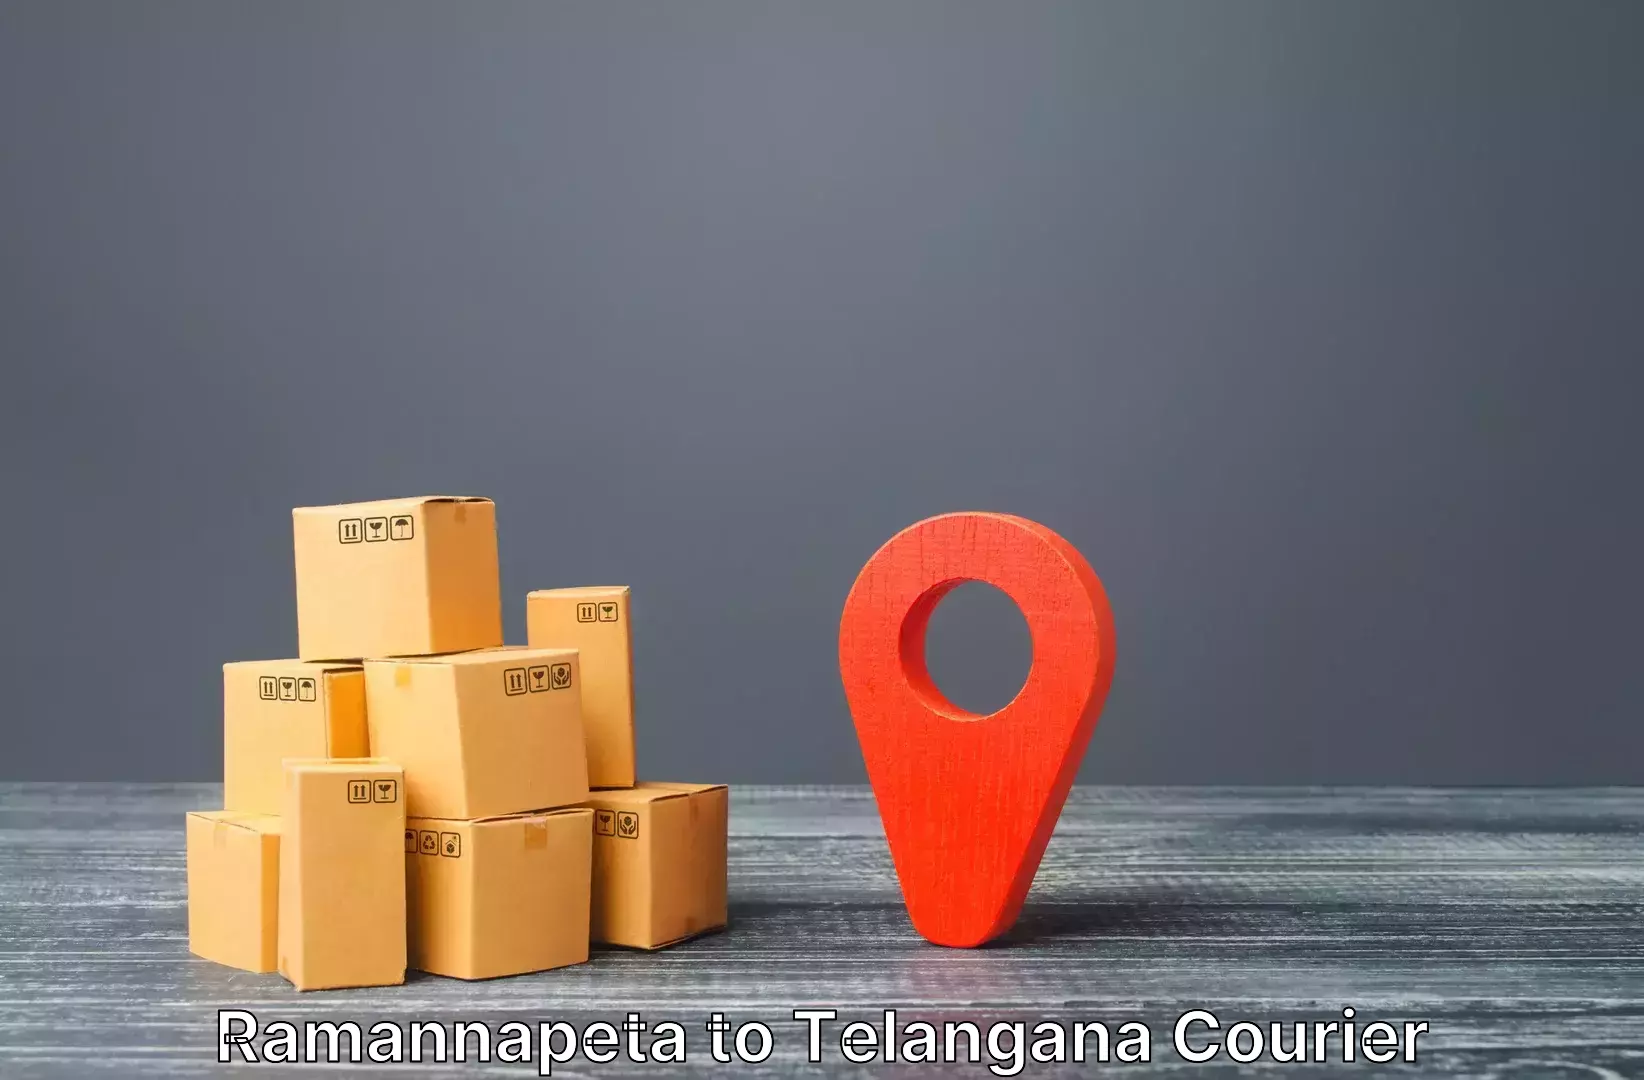 Luggage shipment strategy Ramannapeta to Telangana